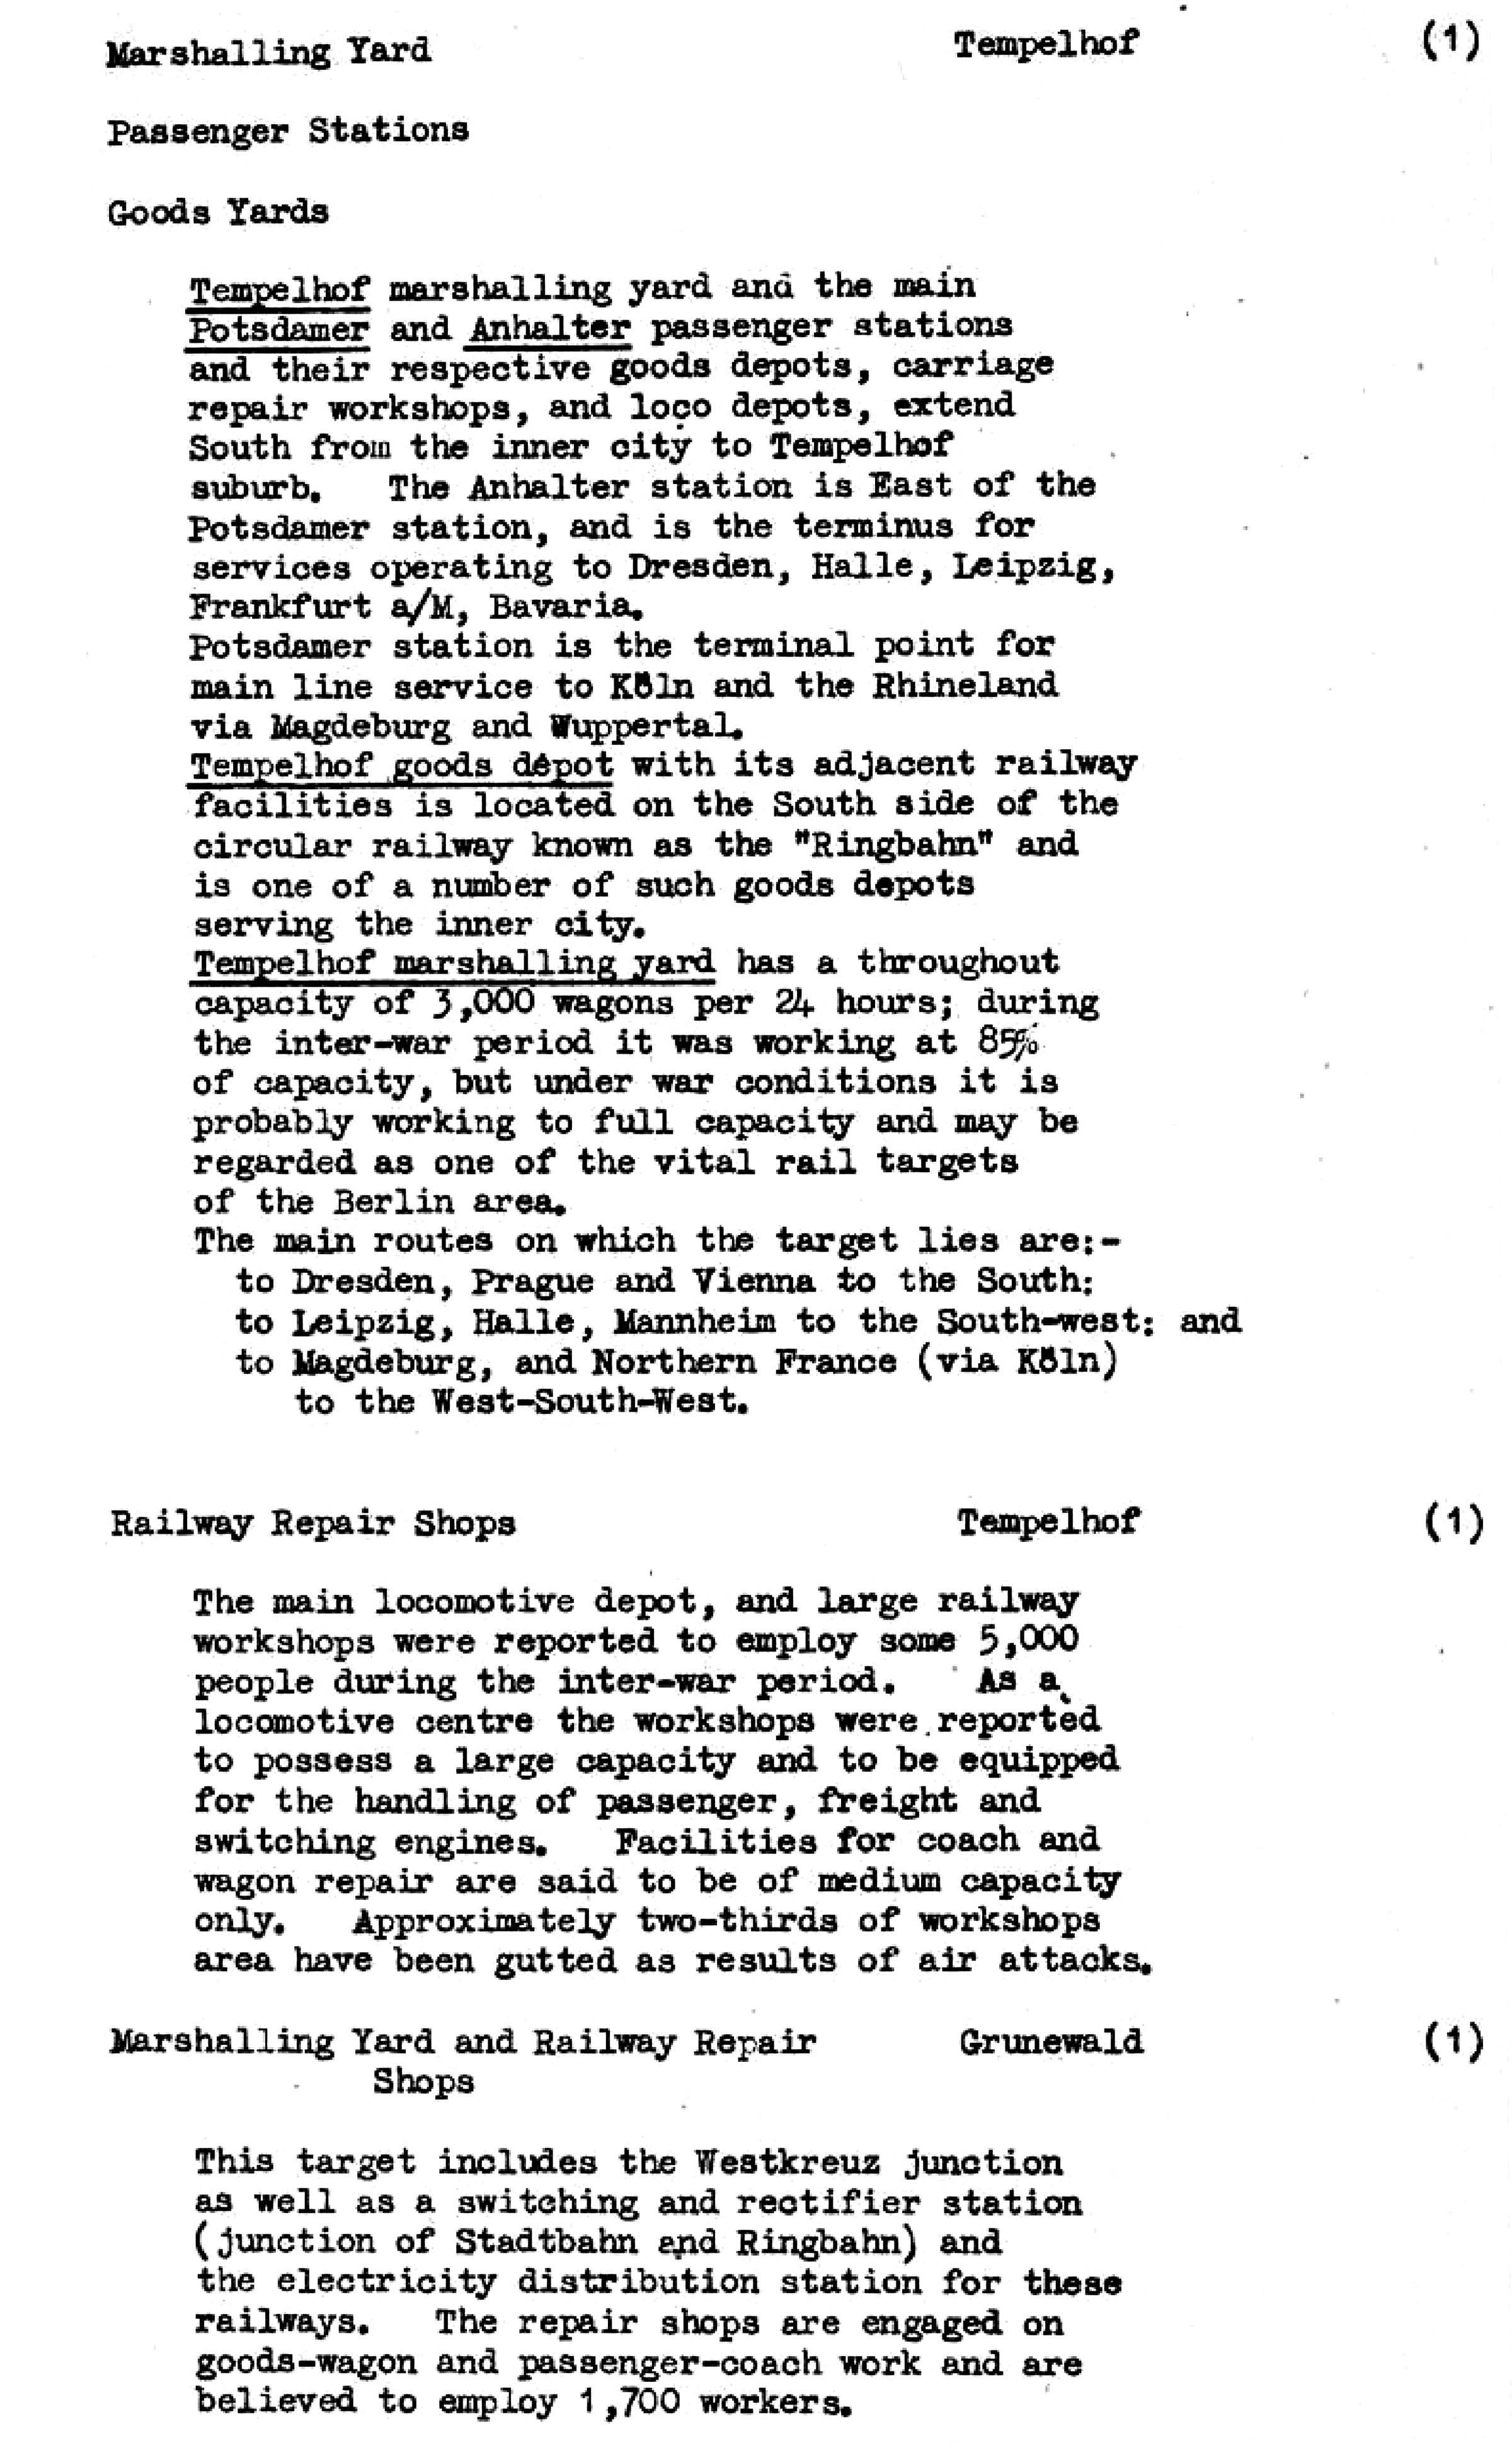 Die Ziele der alliierten Luftangriffe in Berlin im Zeiten Weltkrieg im Bomber's Baedeker - Originaldokument Seite 33a